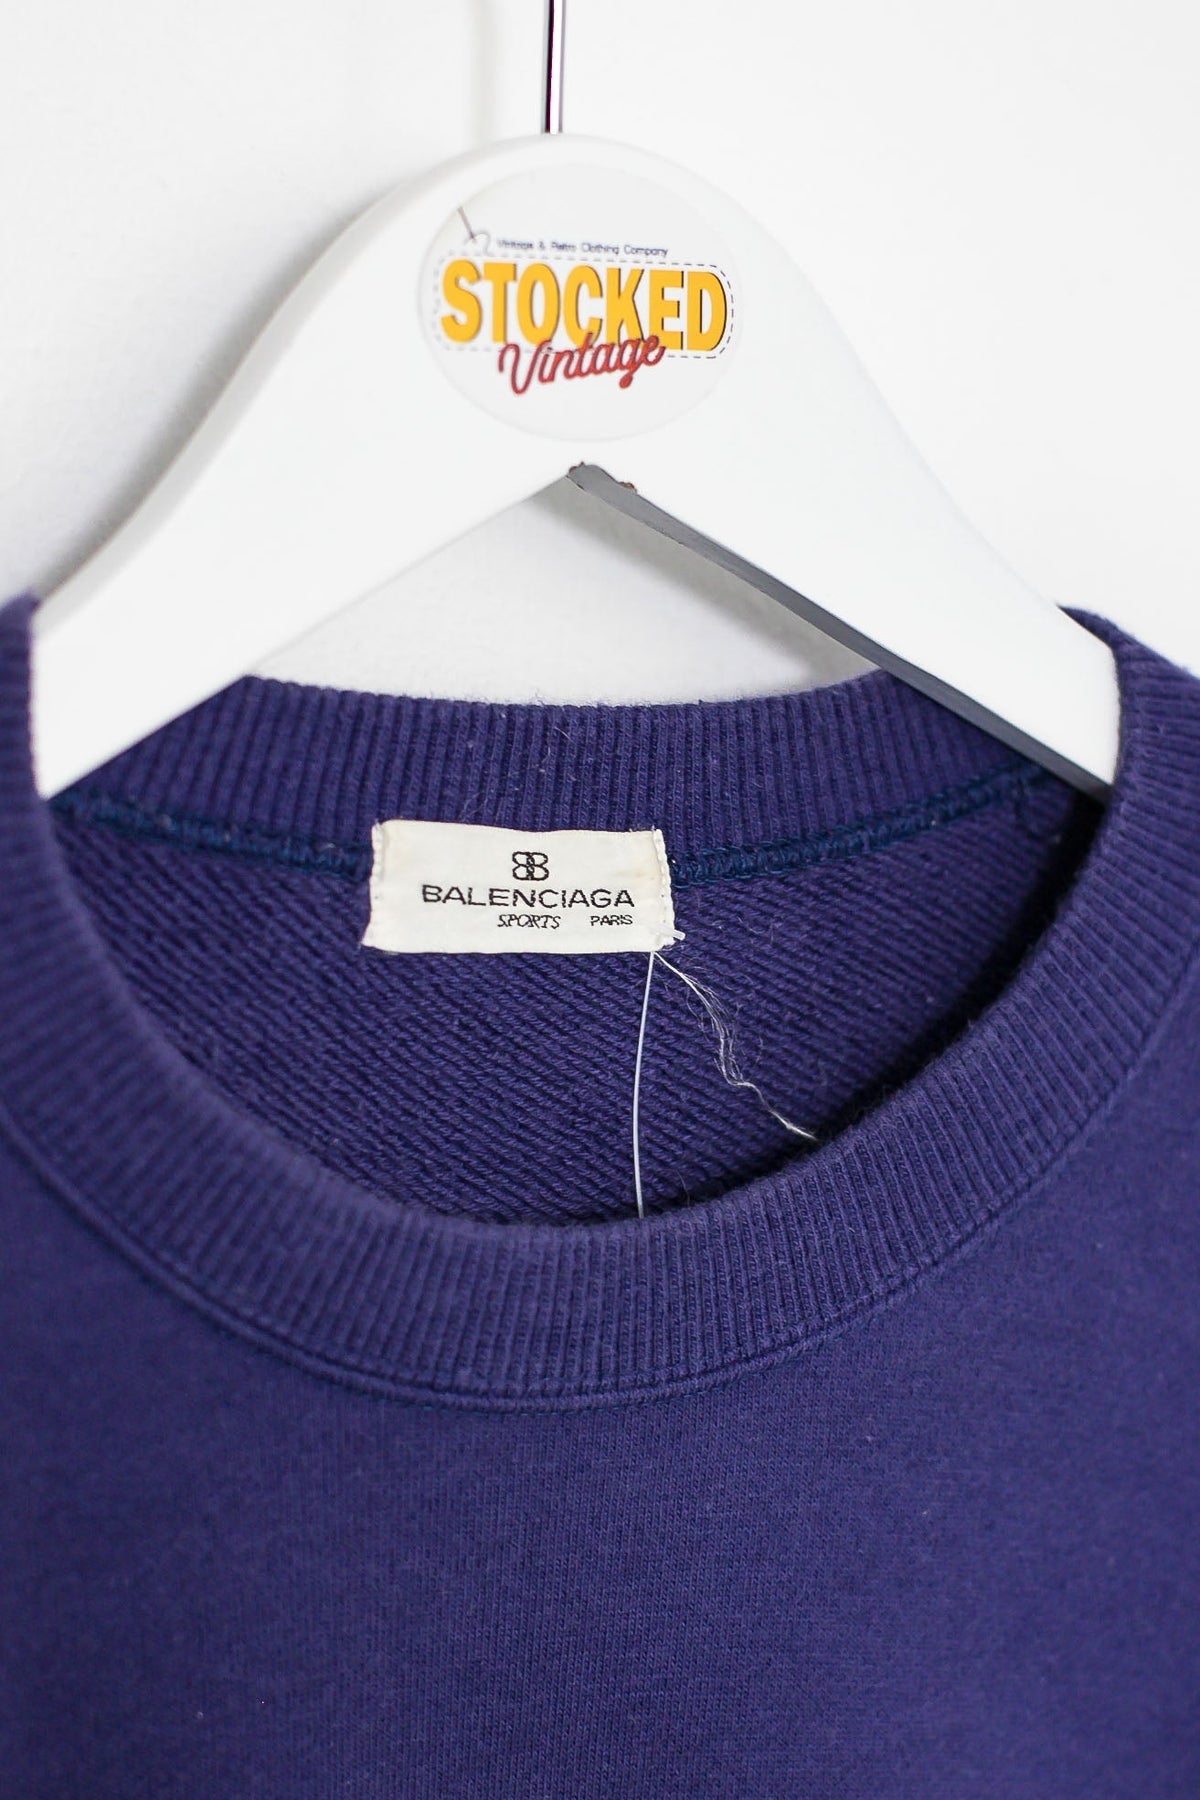 90s Balenciaga Sweatshirt (M)